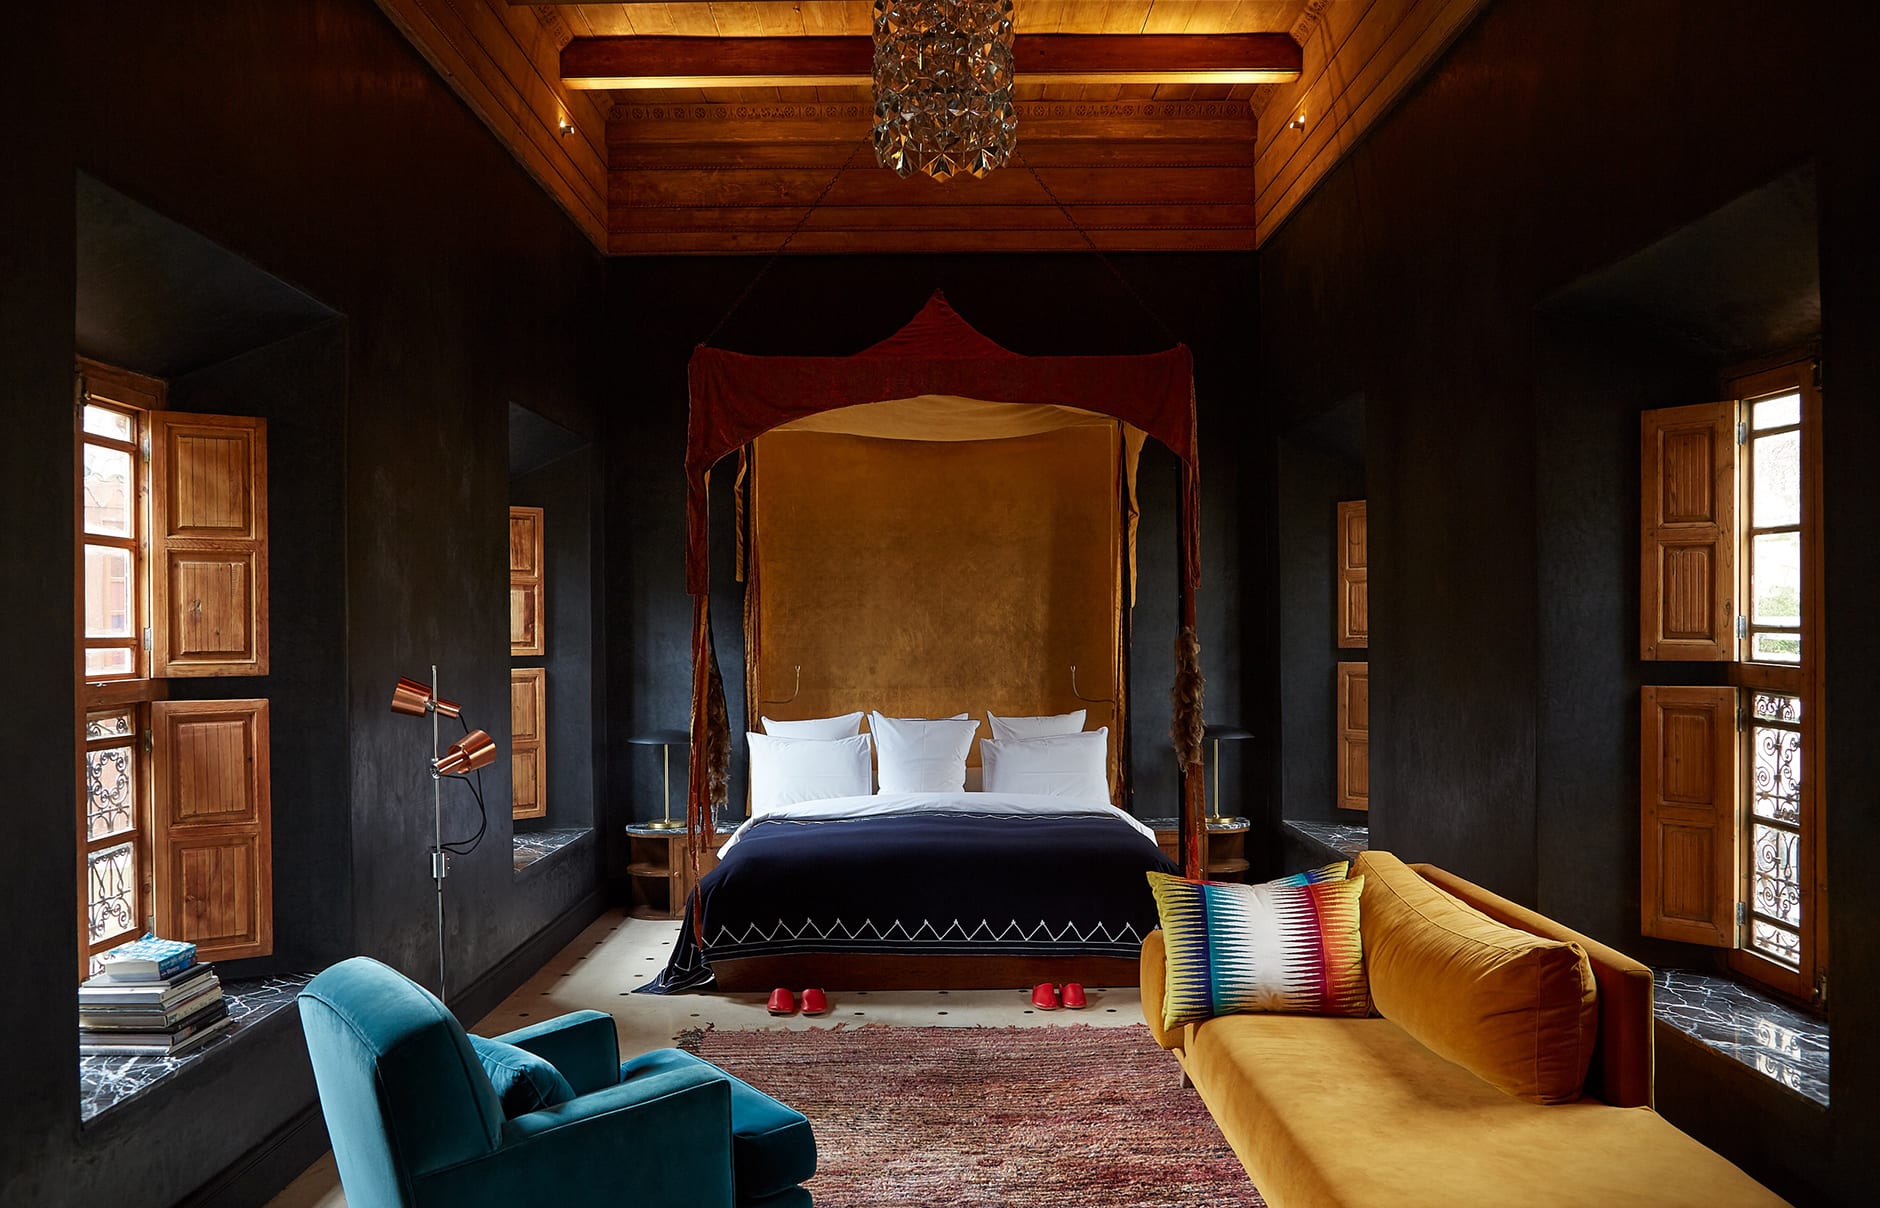 Riad El Fenn, Marrakech, Morocco. Hotel Review by TravelPlusStyle. Photo © El Fenn